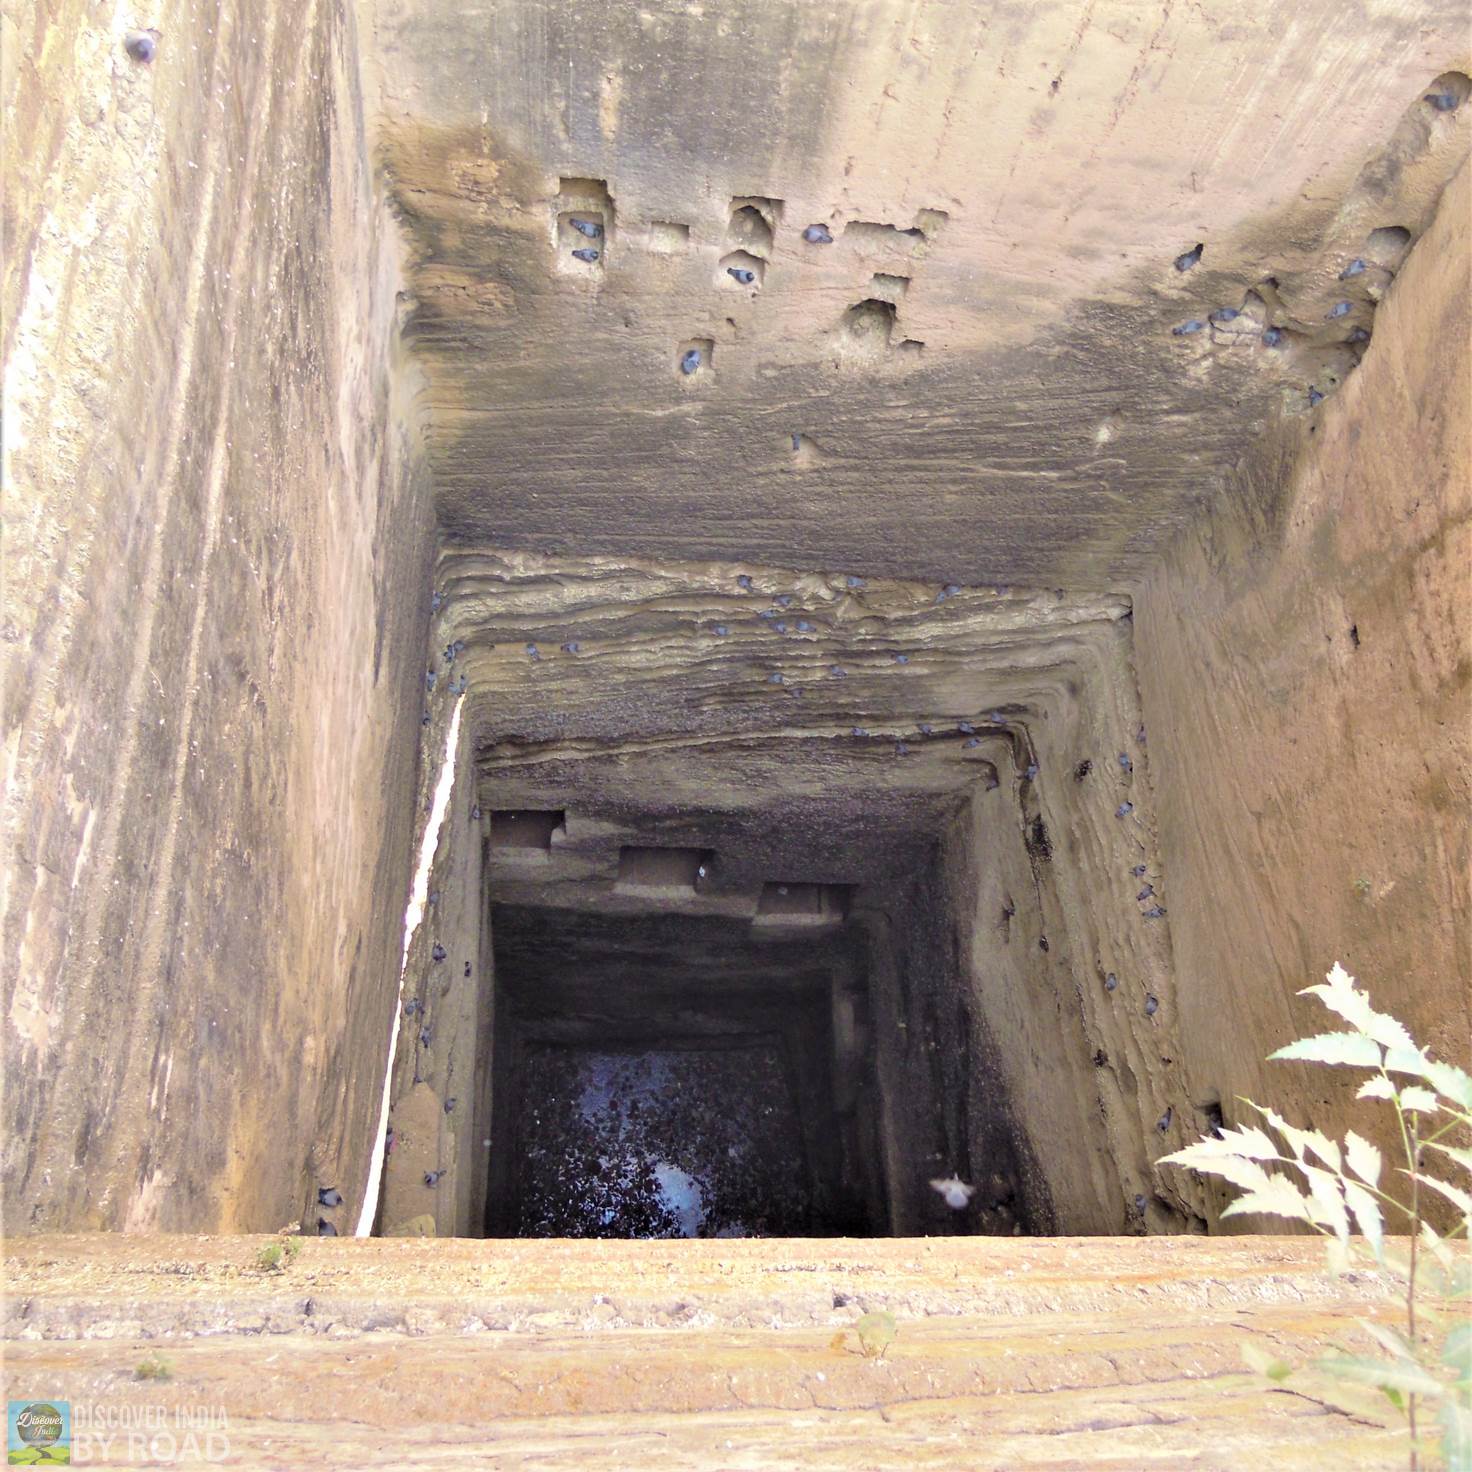 View of Navghan Kuvo with water deep inside